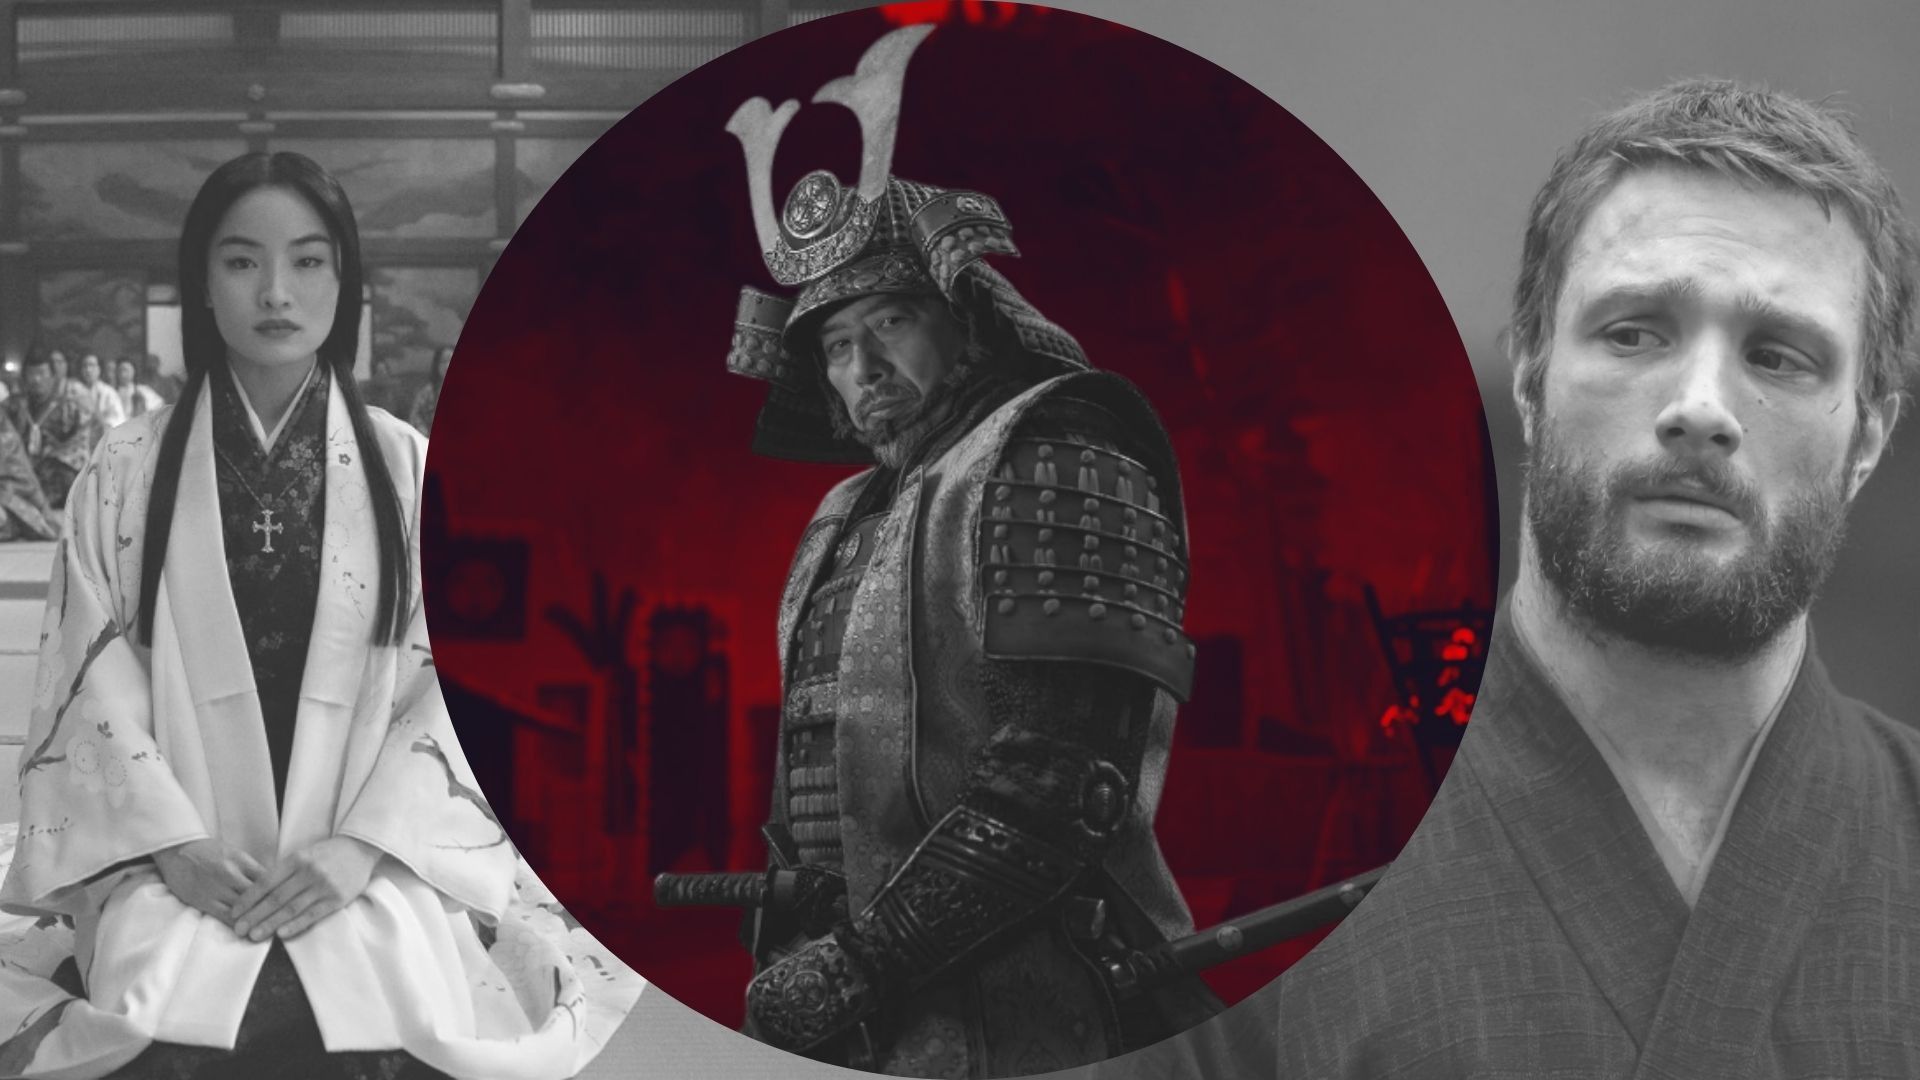 Should Shogun Be Renewed for More Seasons?